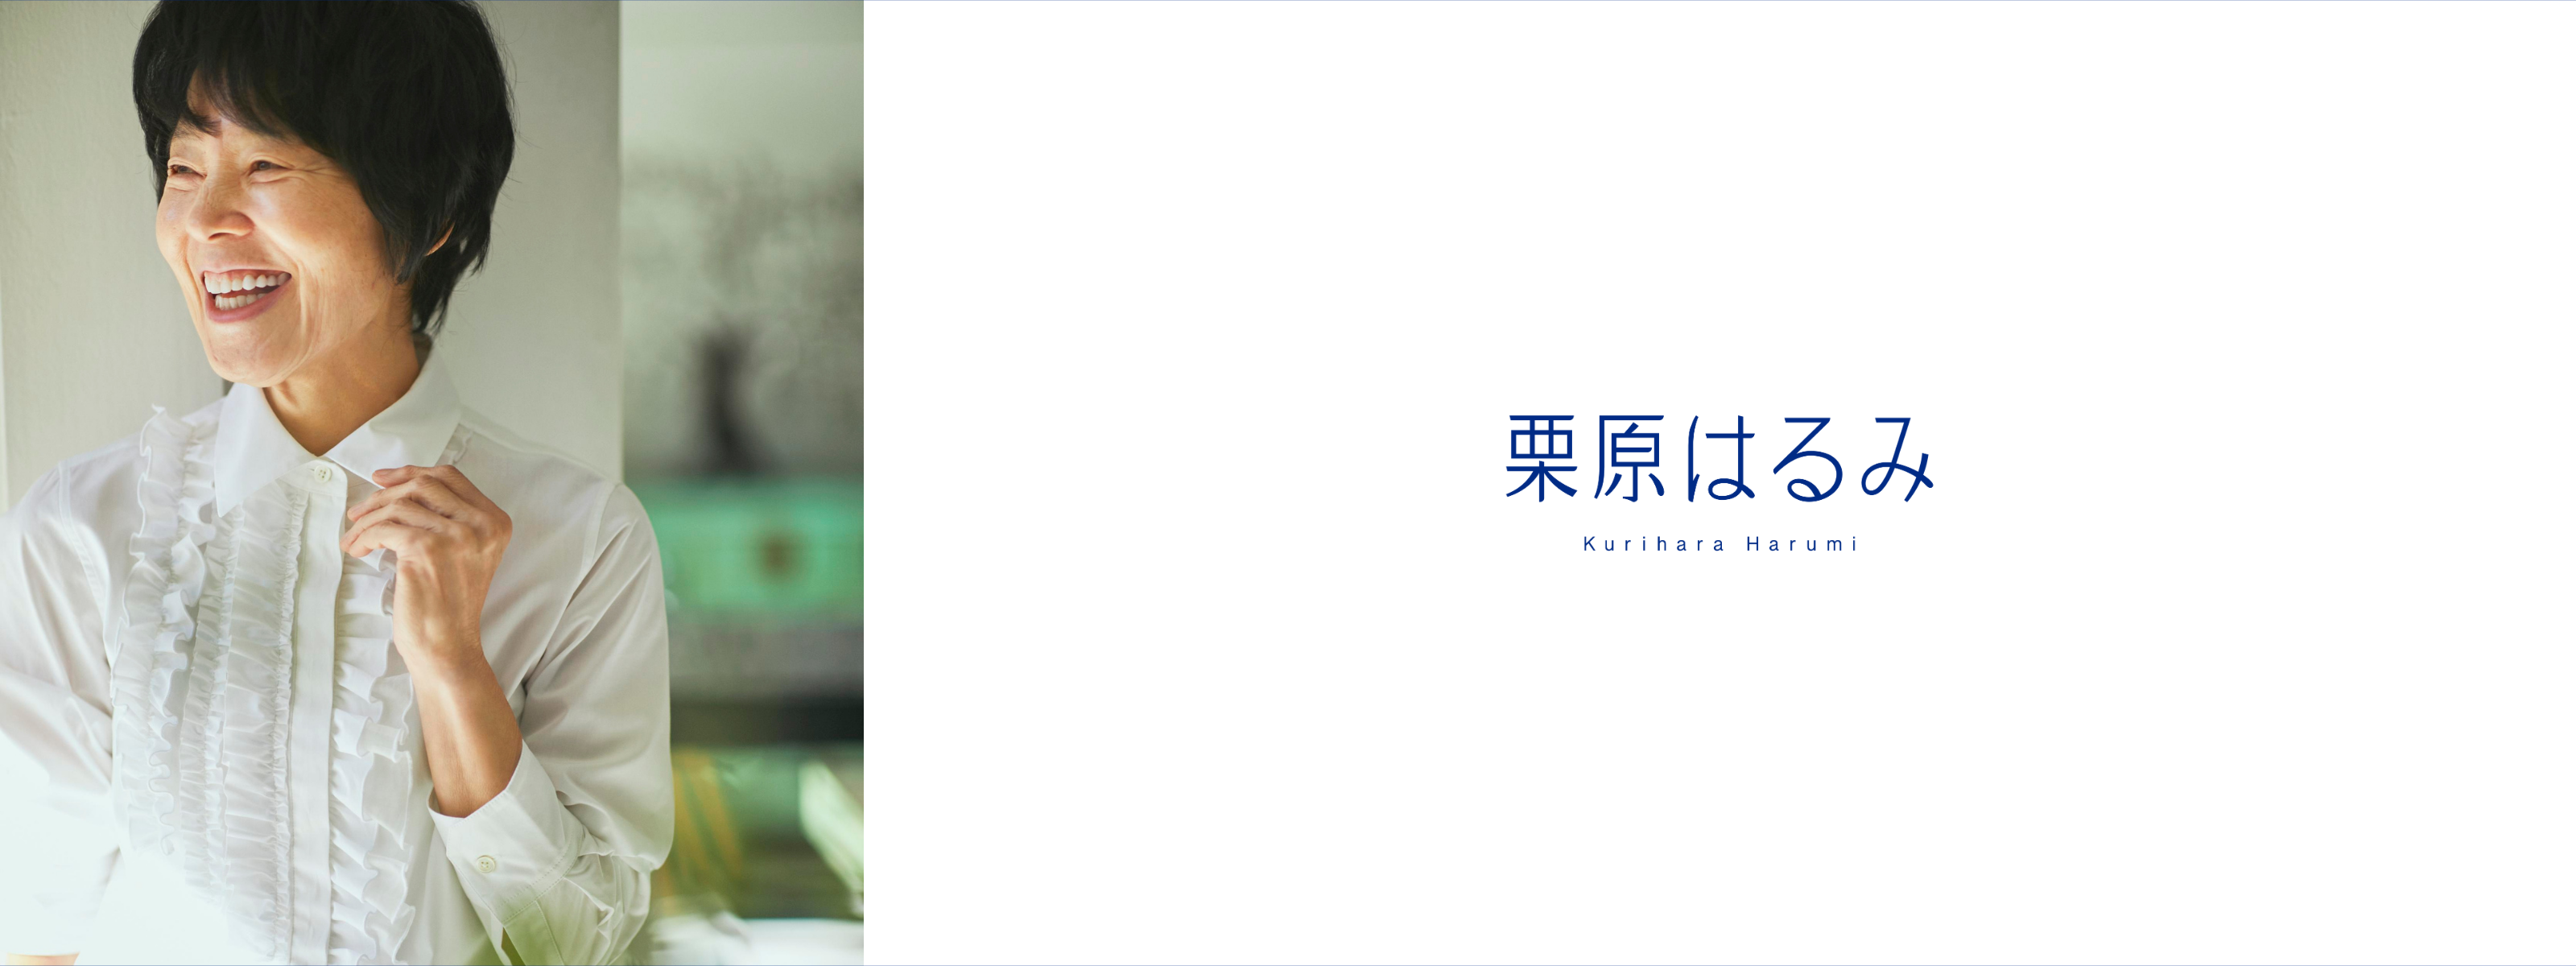 料理家 栗原はるみのライフスタイルブランド「Kurihara Harumi」を始動。本日より、アパレルブランドの受注販売を開始。